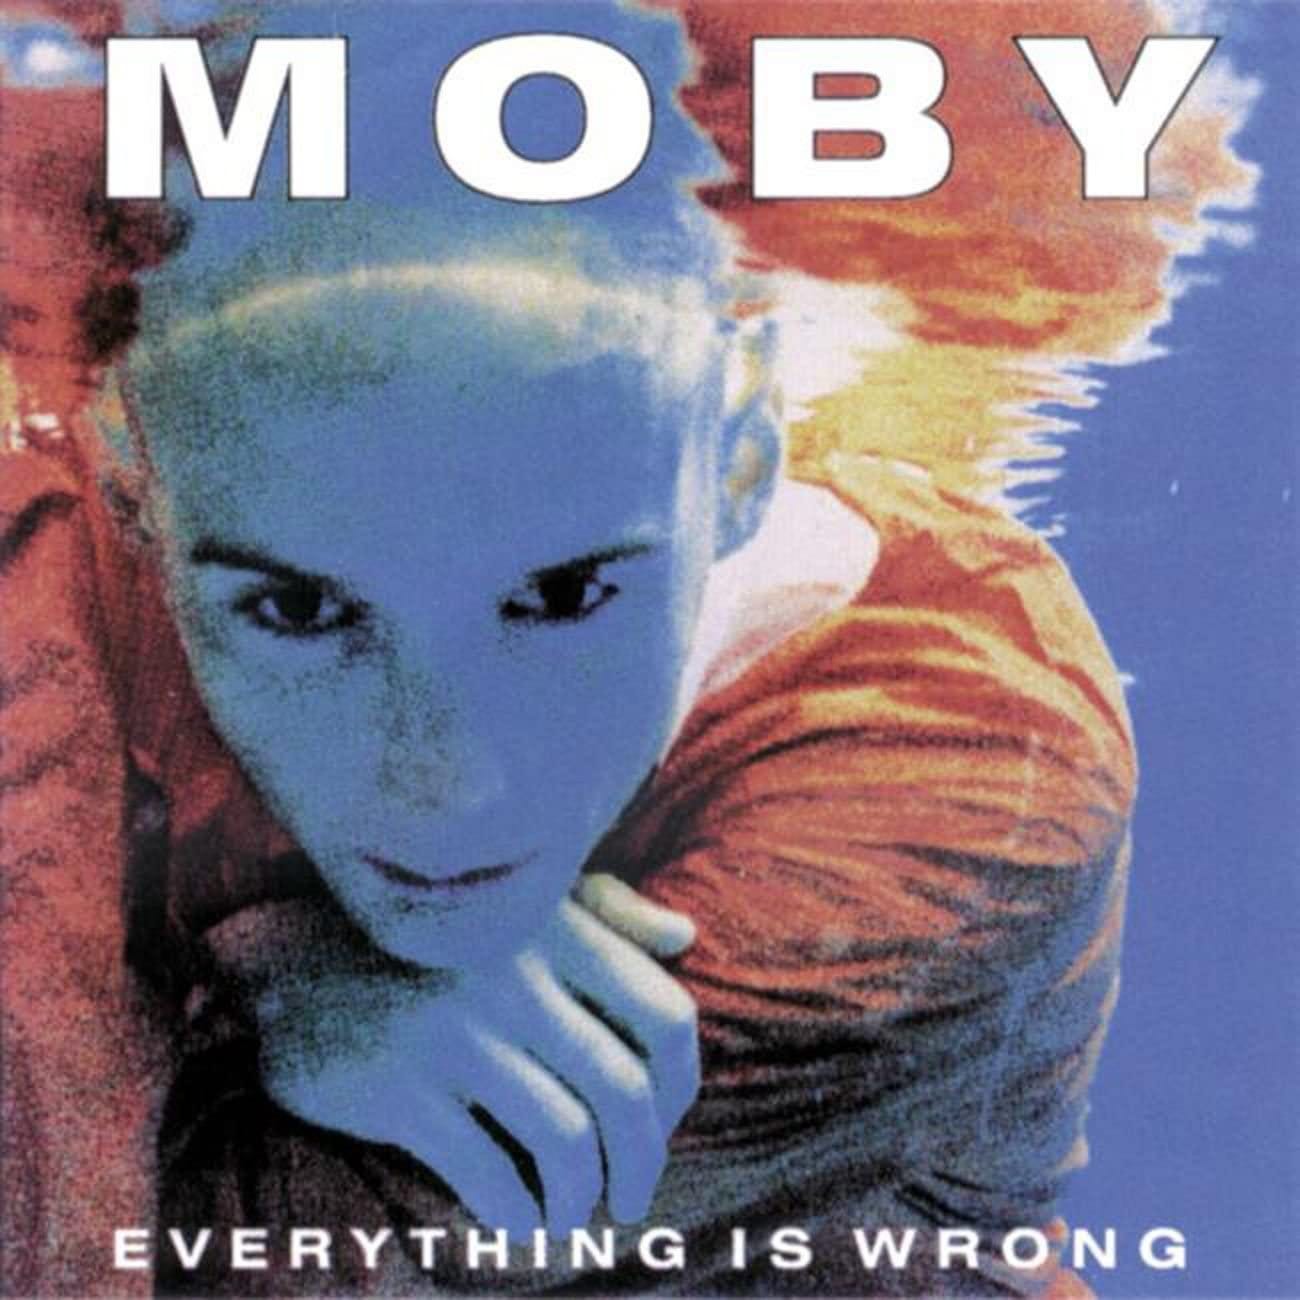 Everything Is Wrong: Amazon.co.uk: CDs & Vinyl